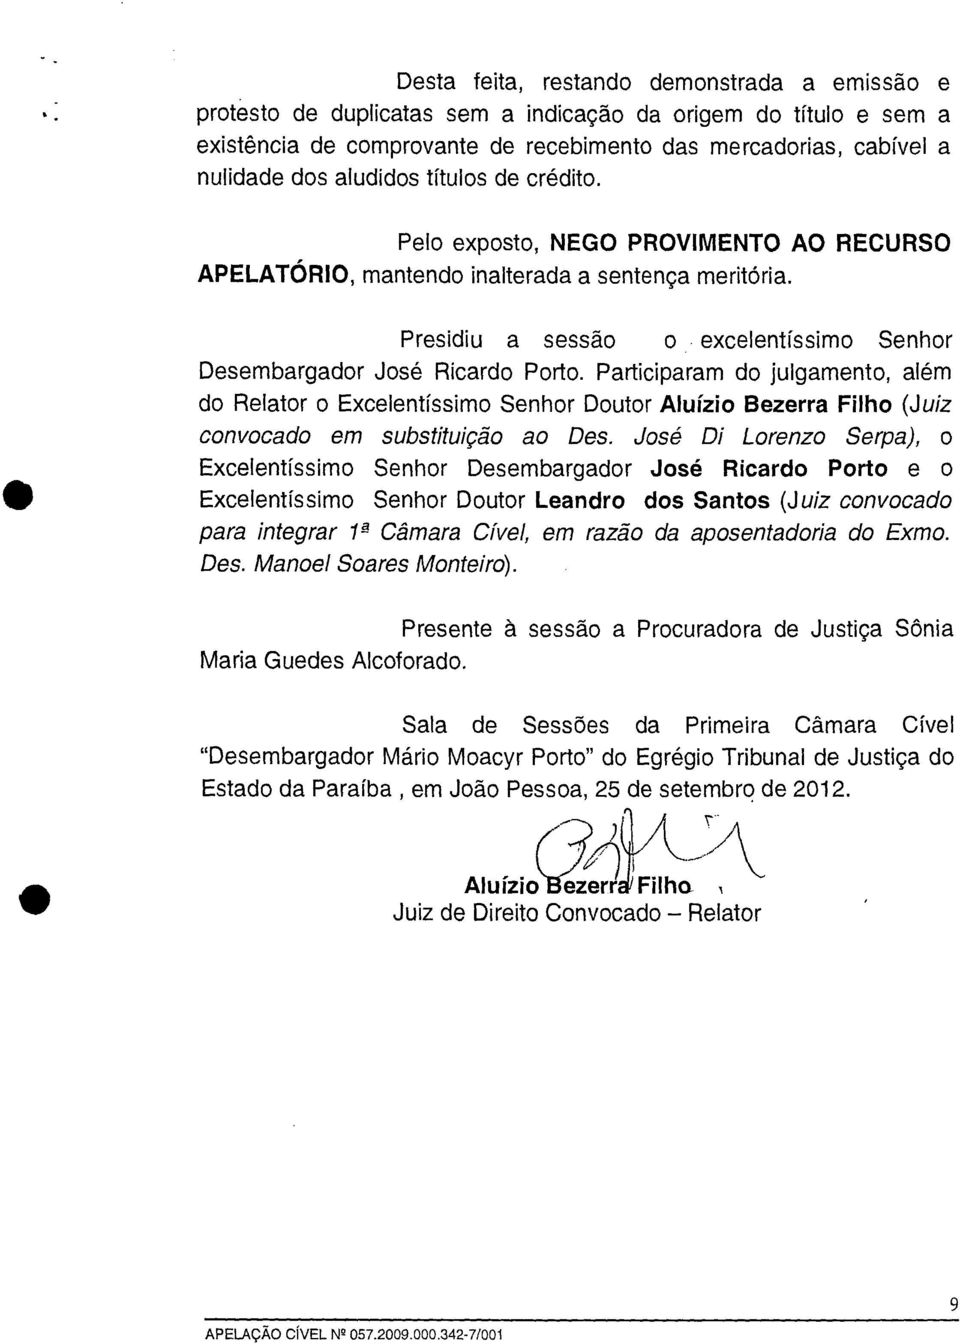 Participaram do julgamento, além do Relator o Excelentíssimo Senhor Doutor Aluízio Bezerra Filho (Juiz convocado em substituição ao Des.